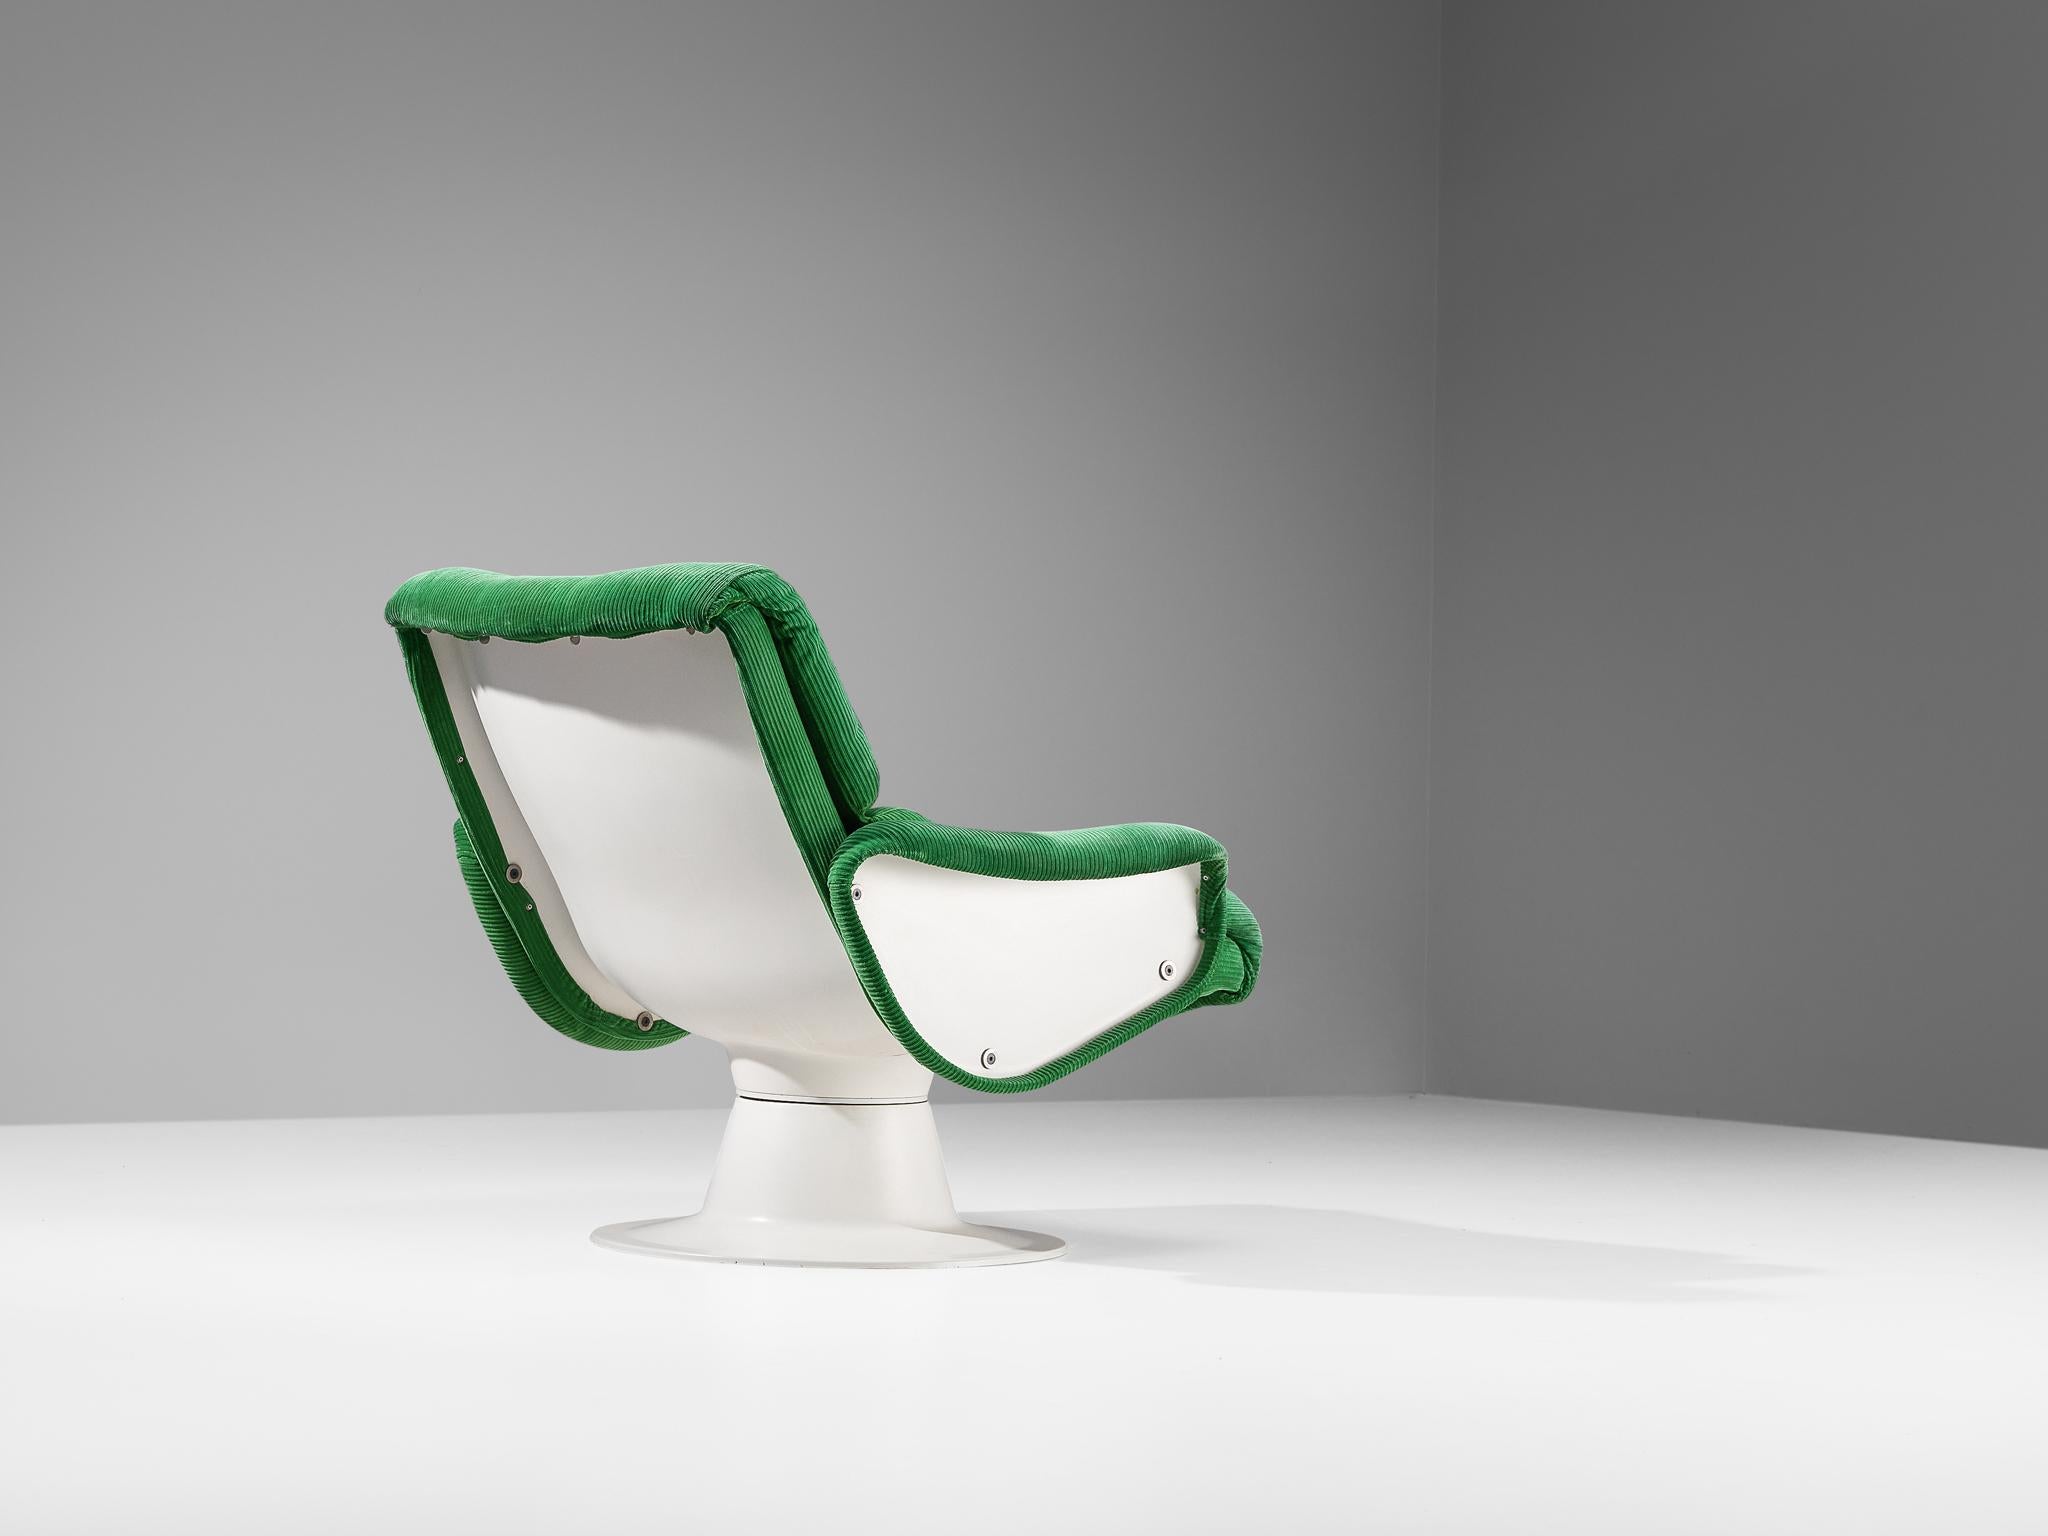 Yrjö Kukkapuro pour Haimi, chaise longue 'Saturnus', tissu, fibre de verre, Finlande, années 1960.

Fauteuil étonnant en tissu vert vif et fibre de verre blanche du designer finlandais Yrjö Kukkapuro. Cette chaise de forme organique est fabriquée